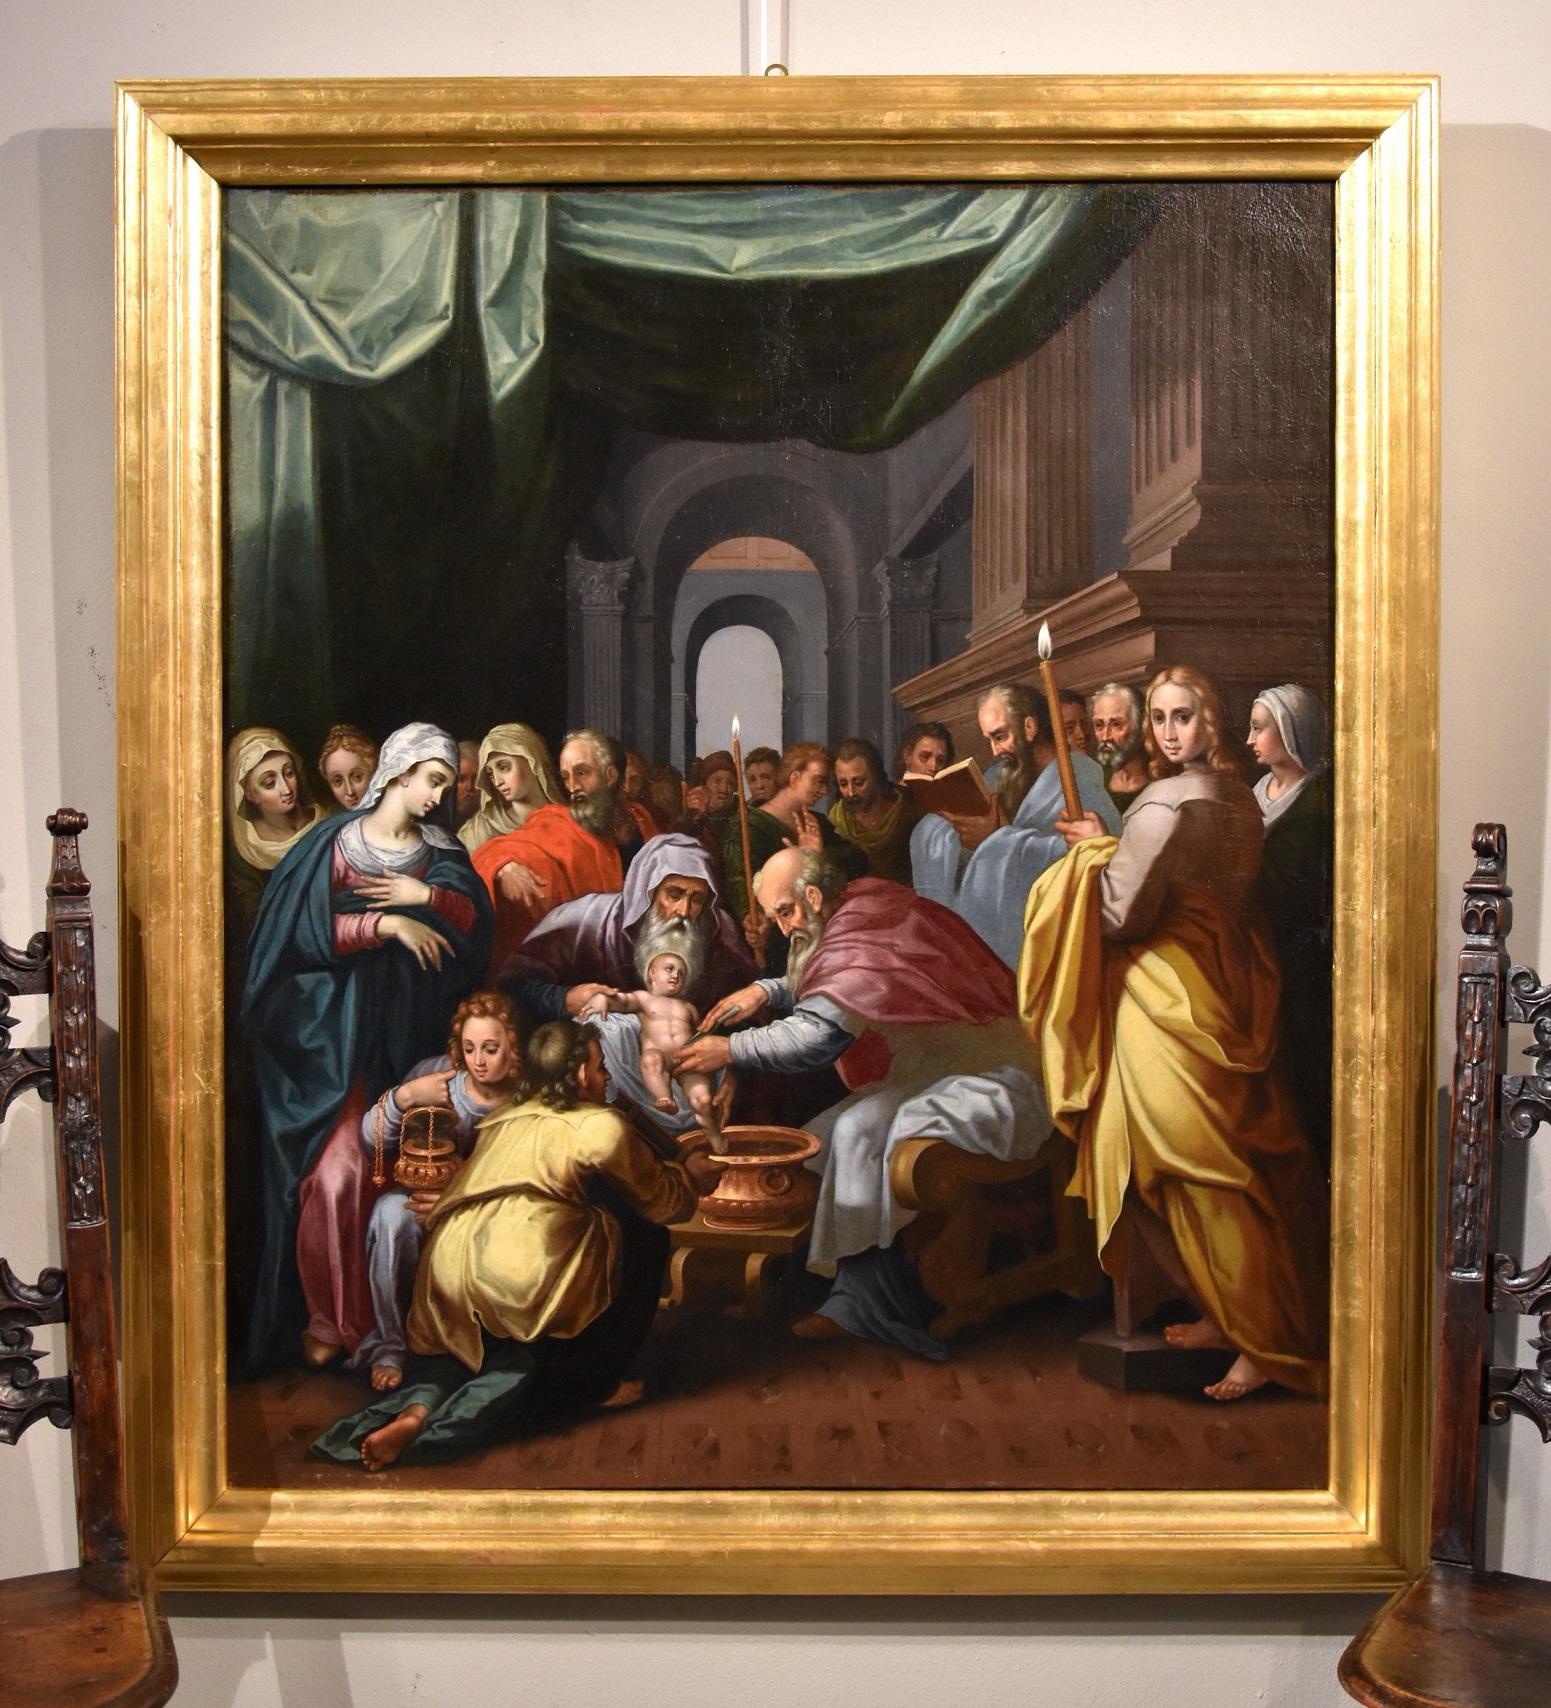 Circumcision Christ Lairesse Flemish Paint Oil on canvas Old master 17th Century - Painting by Gérard de Lairesse (Liège 1641 - Amsterdam 1711)